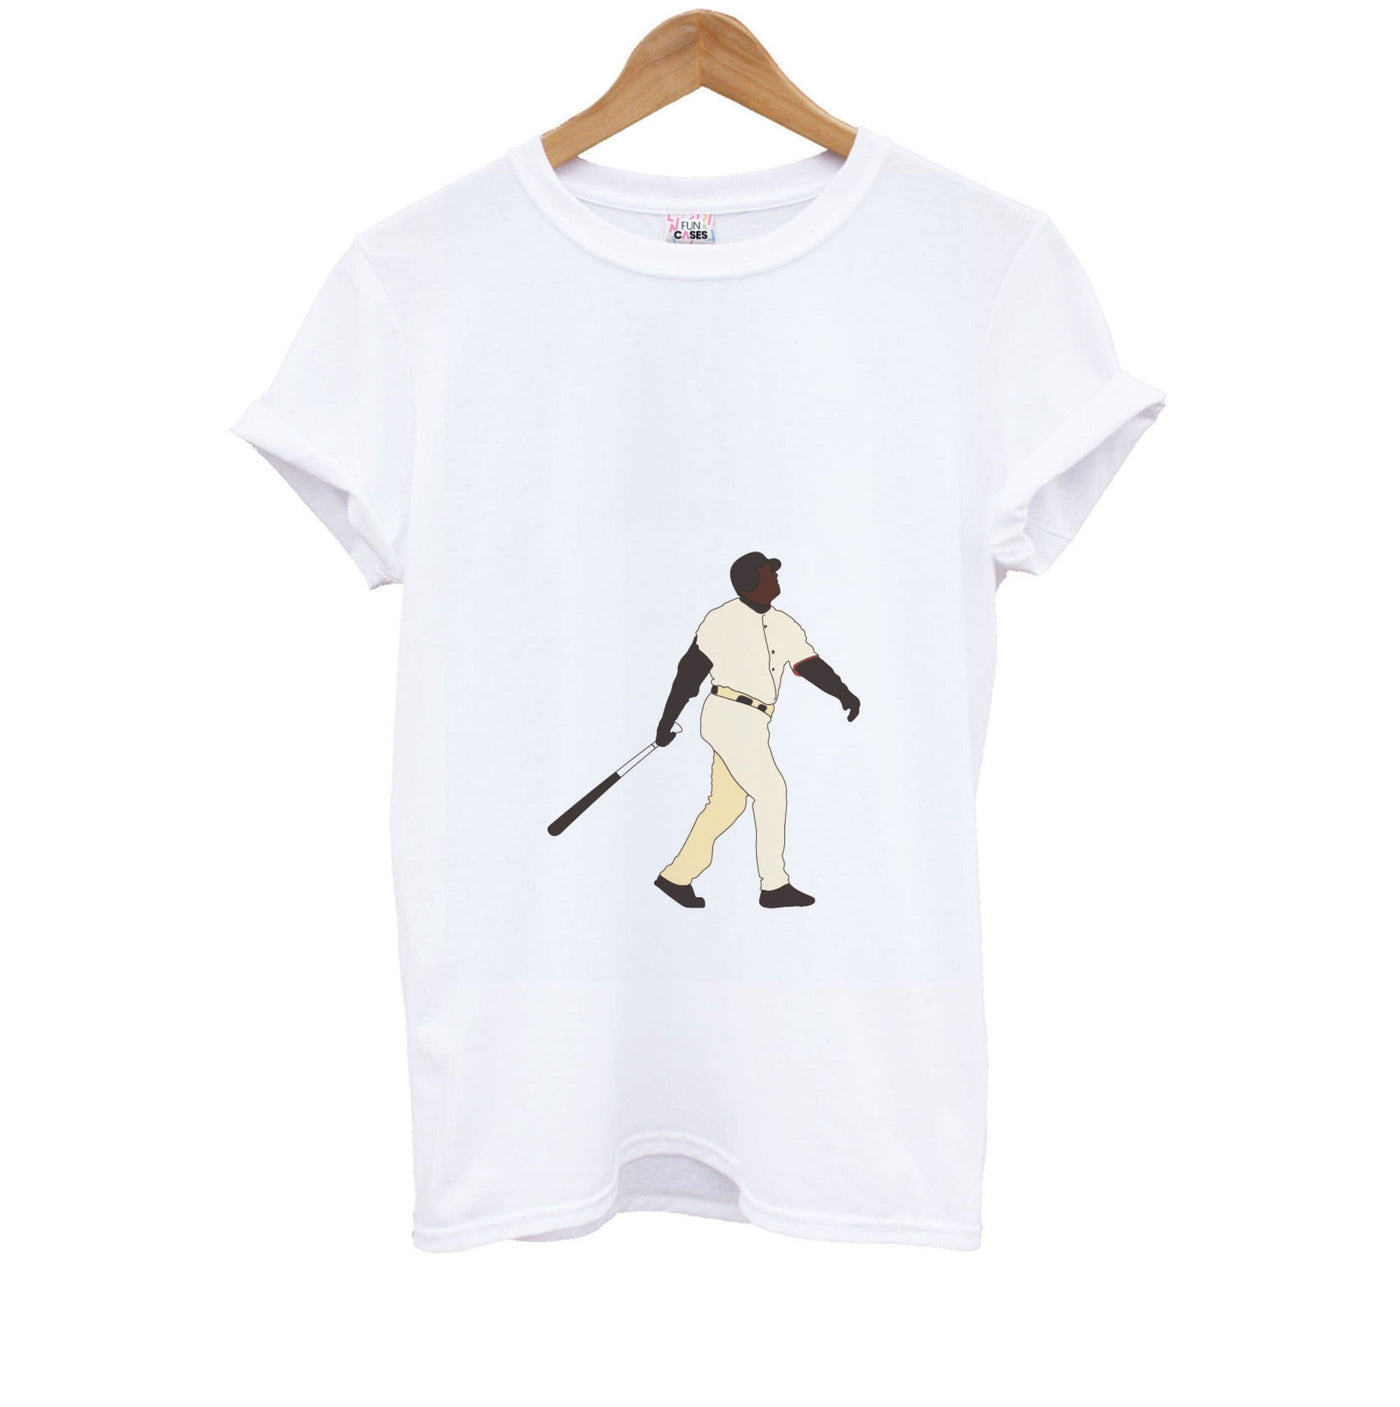 Barry Bonds - Baseball Kids T-Shirt